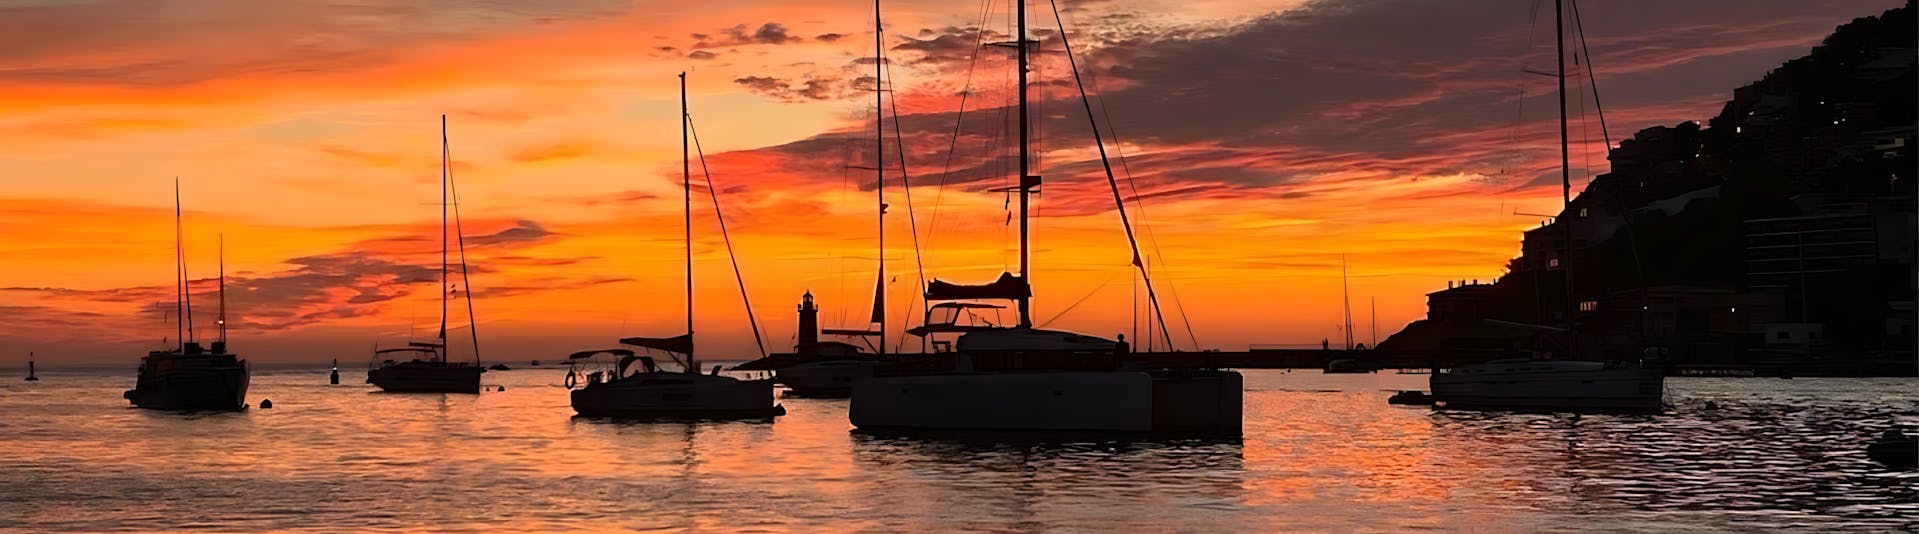 Giro privato in barca a vela a Port Andratx al tramonto.